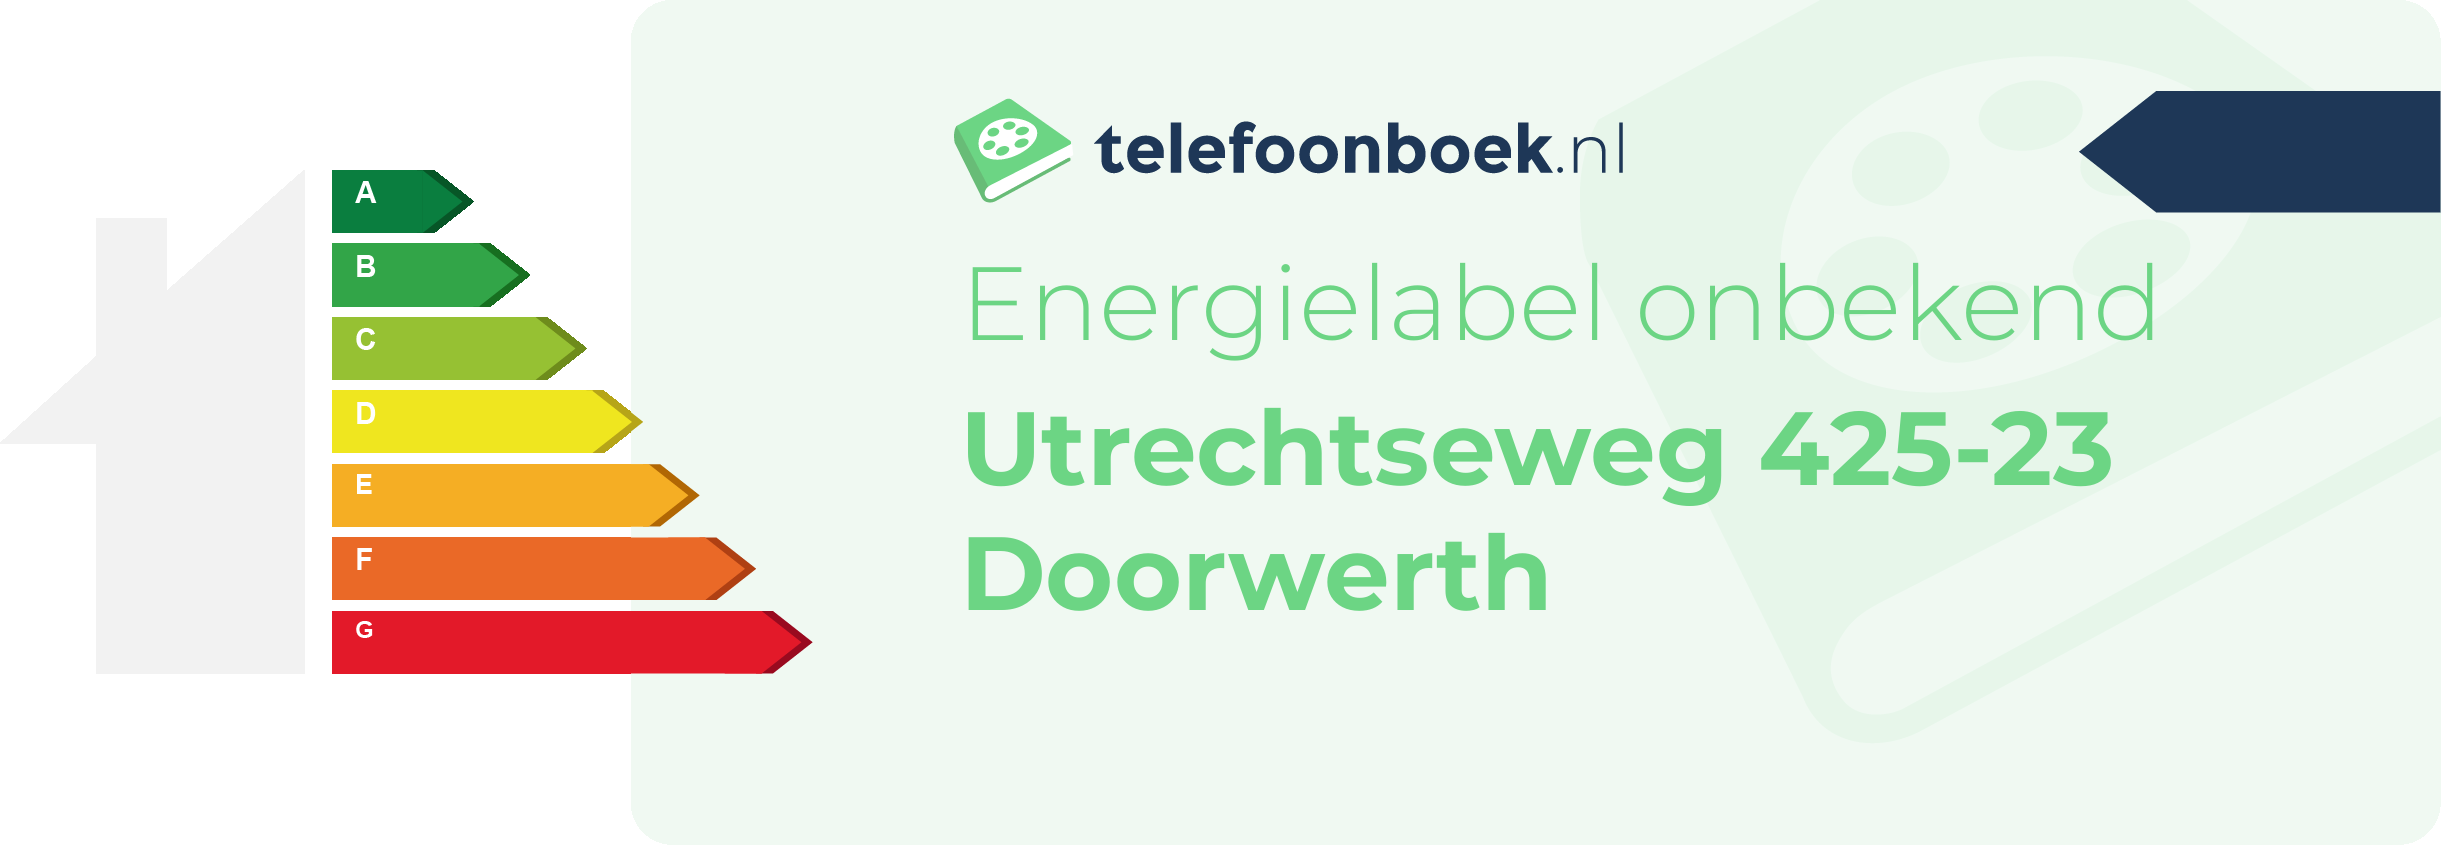 Energielabel Utrechtseweg 425-23 Doorwerth